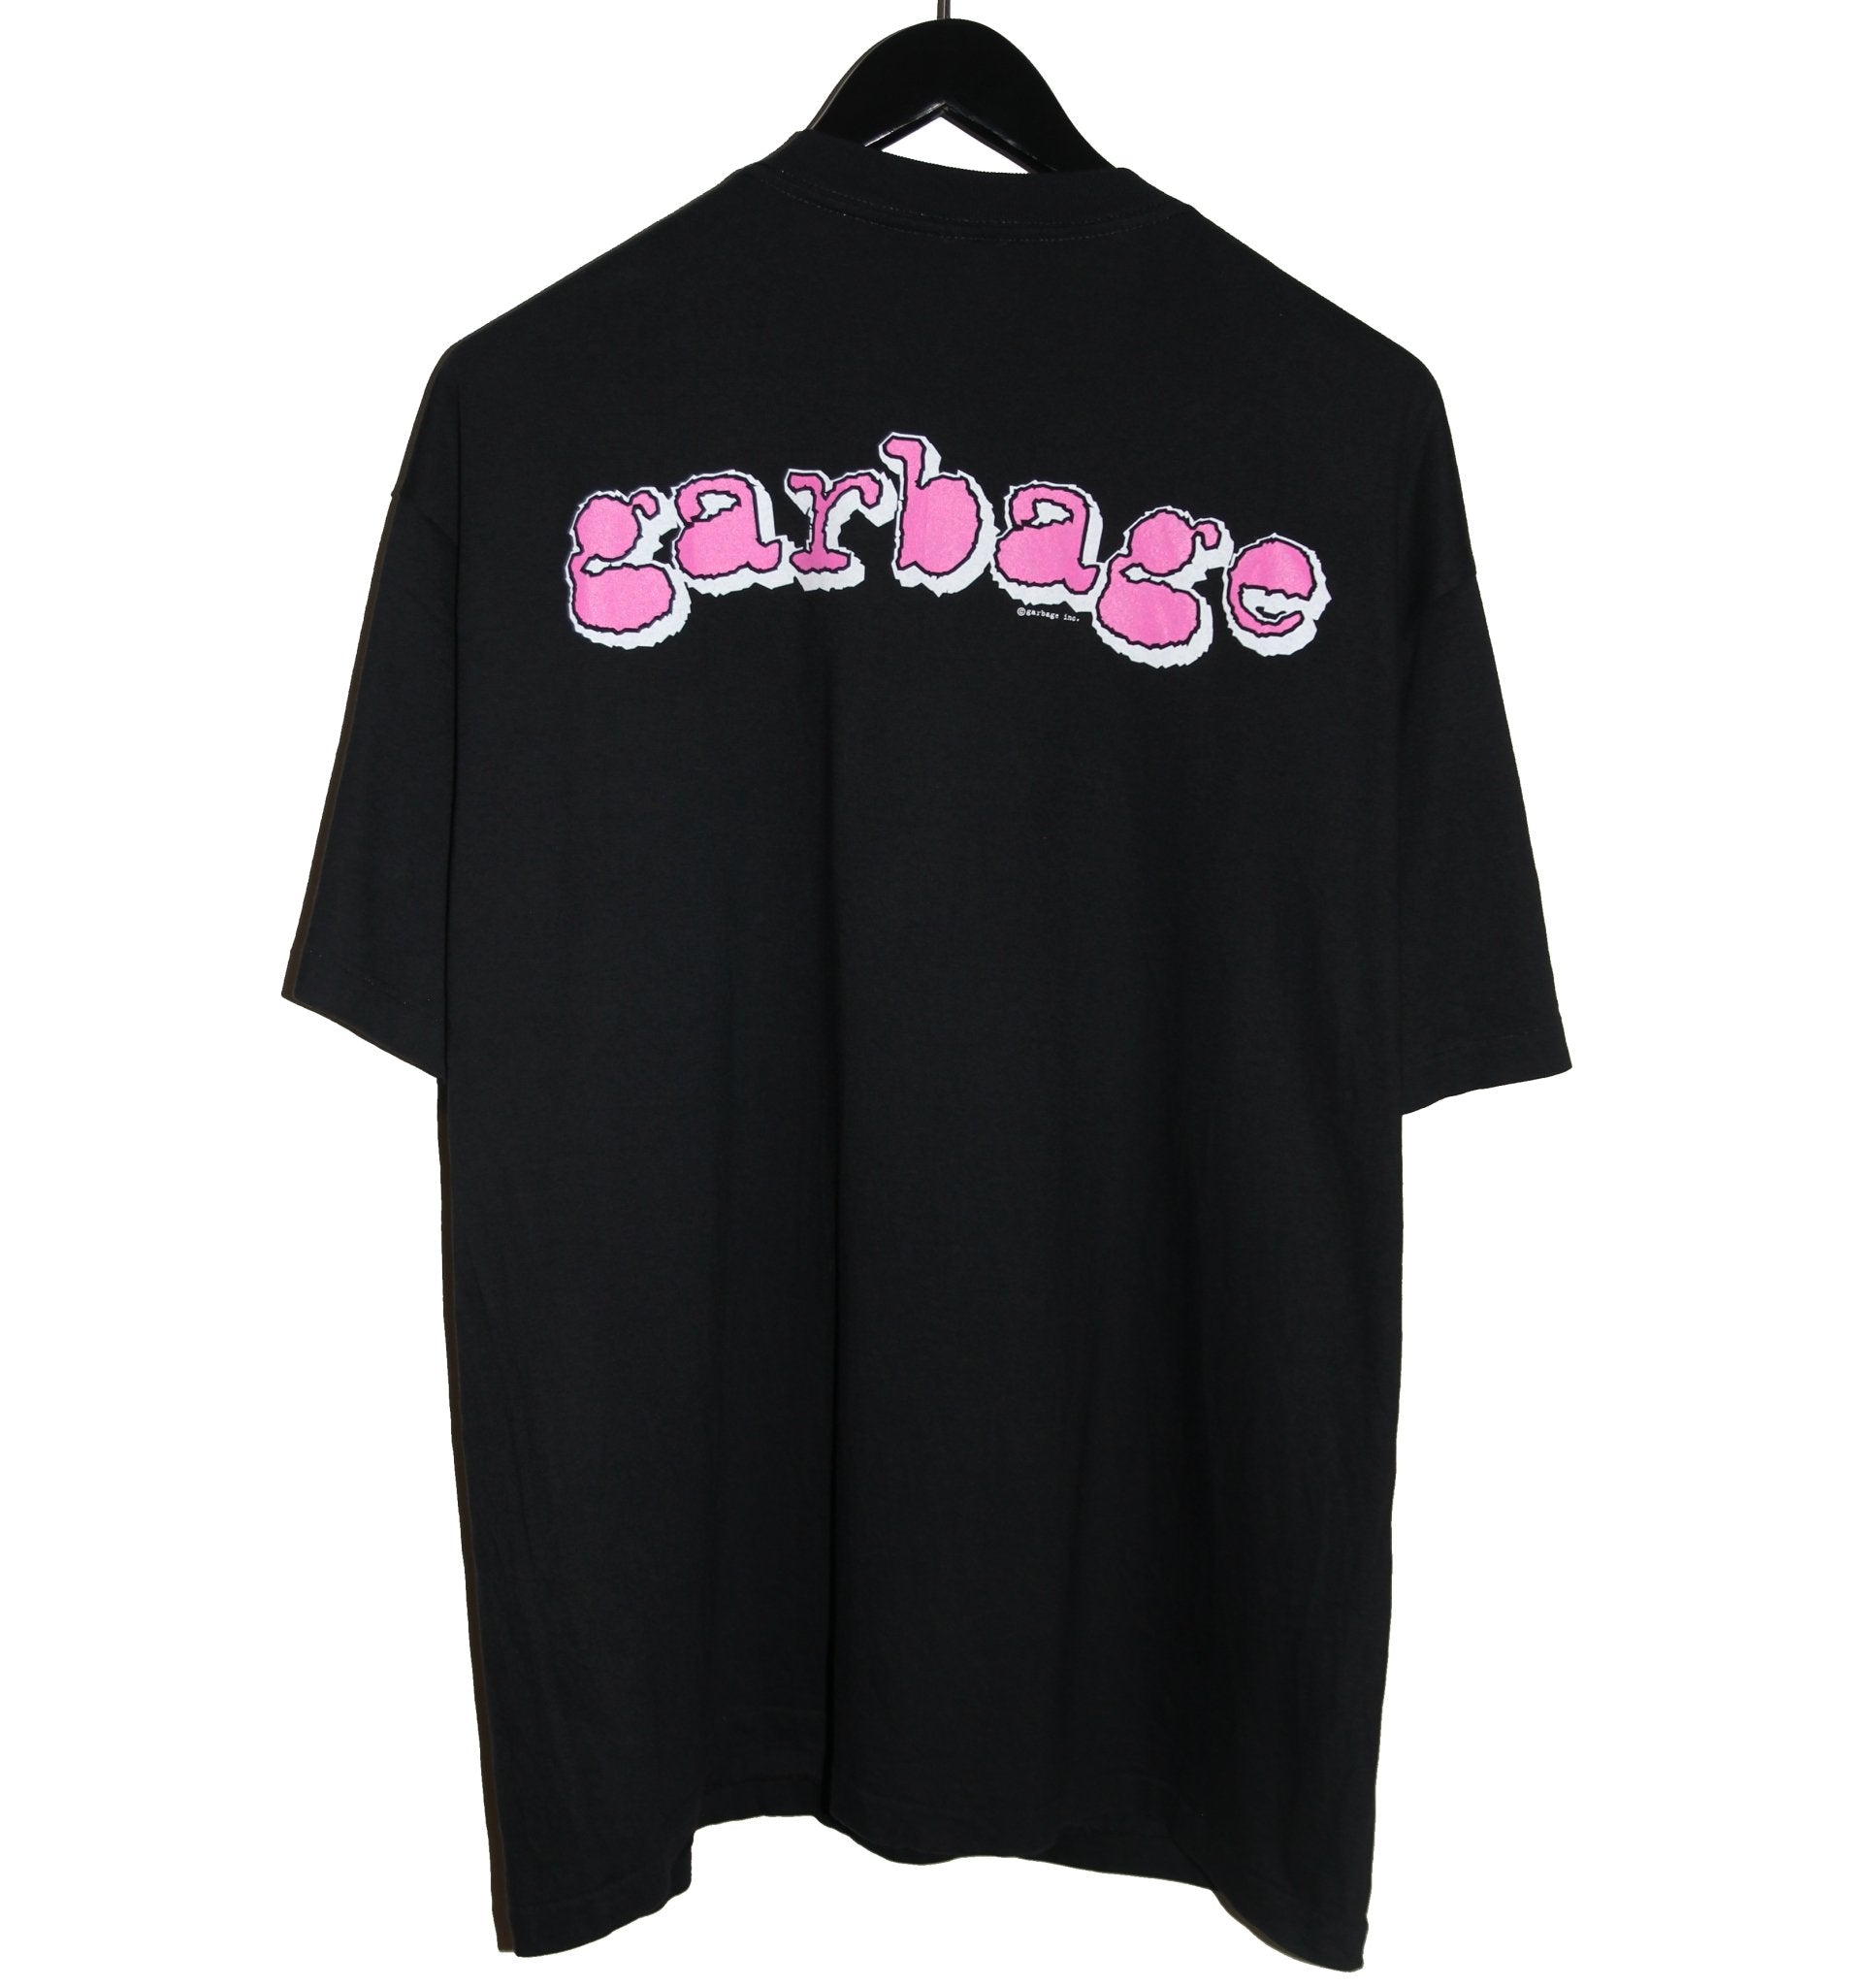 Garbage 1995 Album Shirt - Faded AU